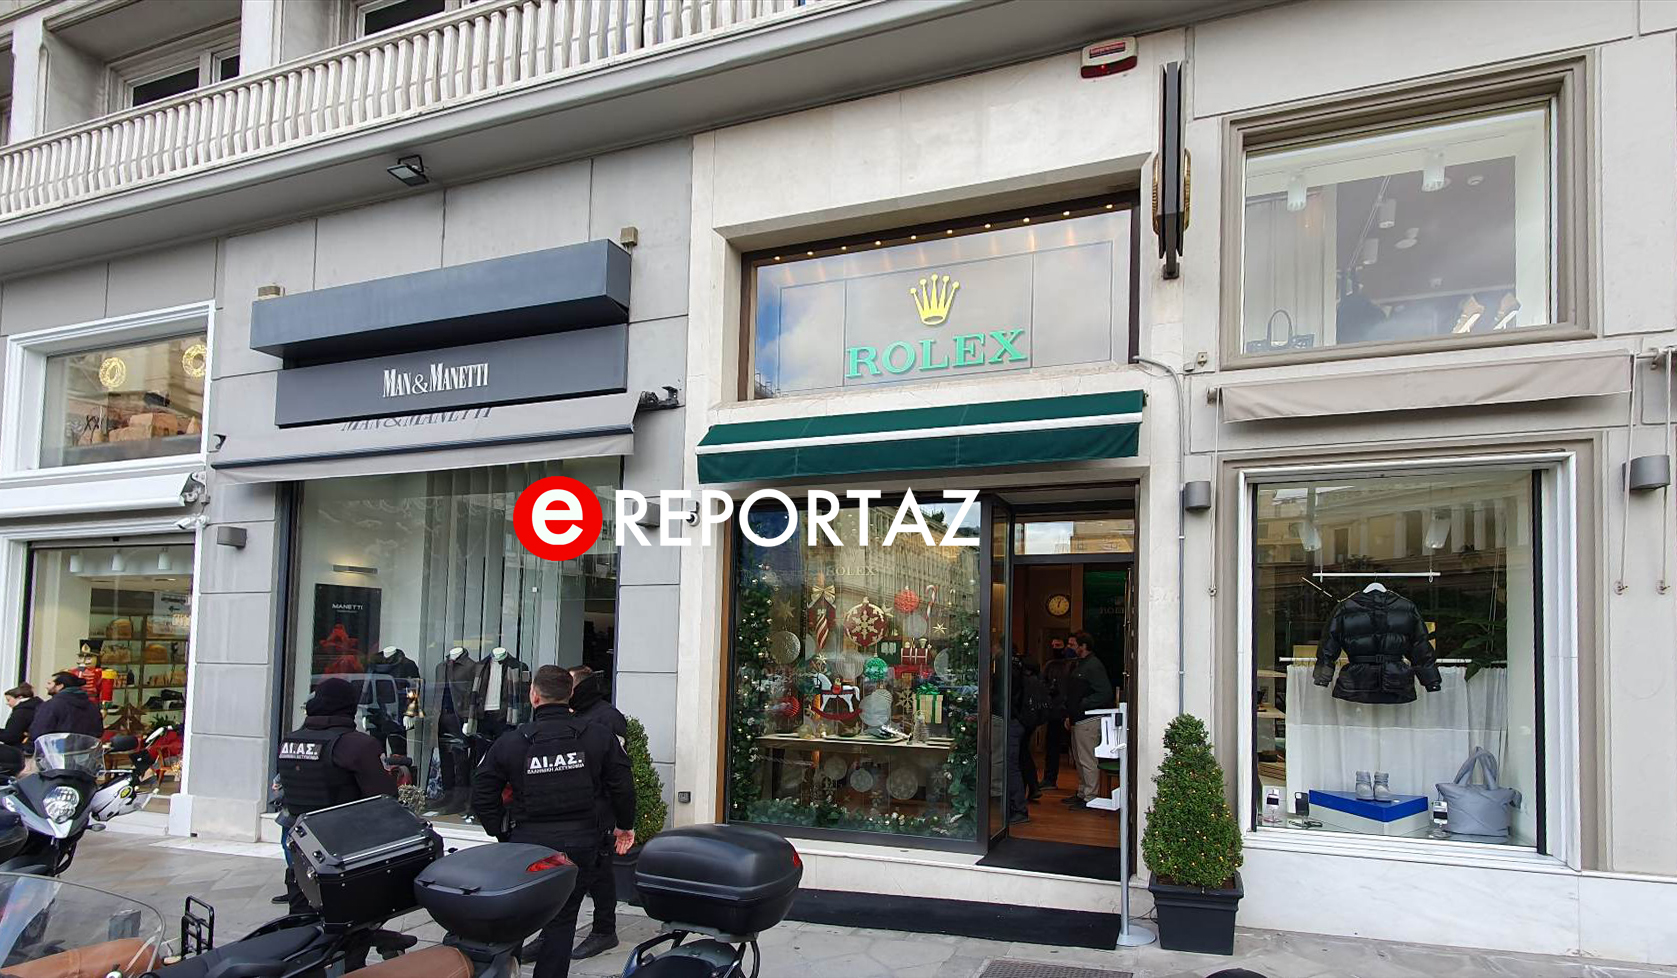 Ένοπλη ληστεία στη Rolex: Βρέθηκε η μία μηχανή που χρησιμοποίησαν οι δράστες